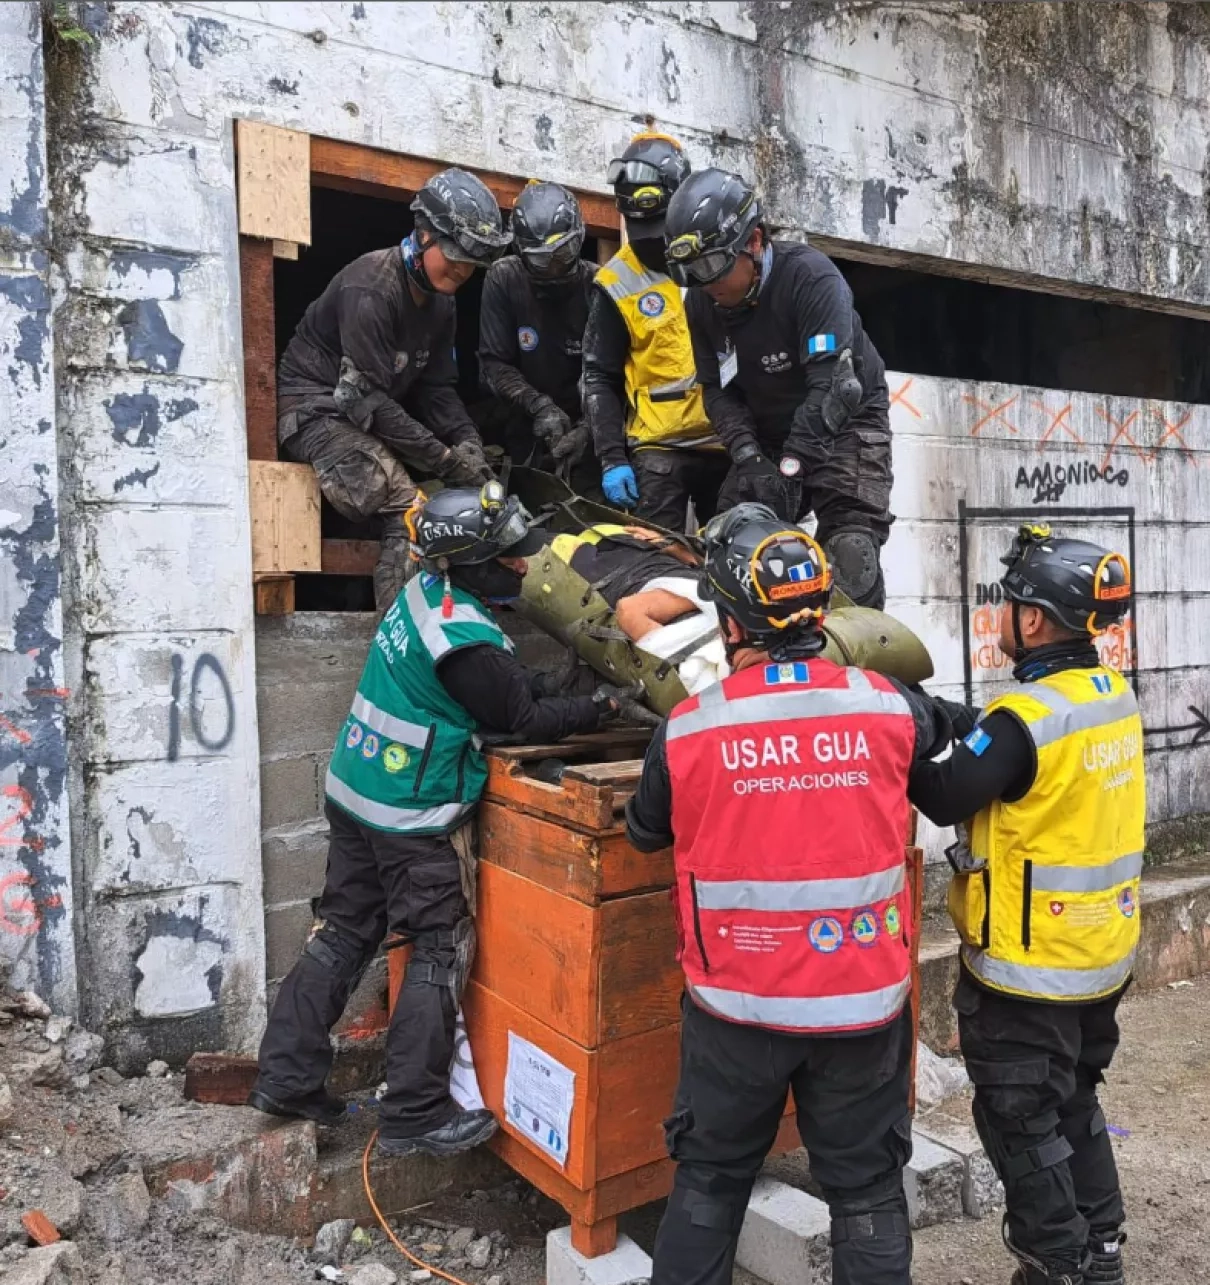 Un equipo de búsqueda y rescate urbano (USAR) de la Coordinación Nacional para la Reducción de Desastres de Guatemala (CONRED) simula rescatar a un individuo atrapado de una estructura colapsada durante la 3ª Simulación Regional de Respuesta a Desastres y Asistencia Humanitaria. Créditos: CEPREDENAC